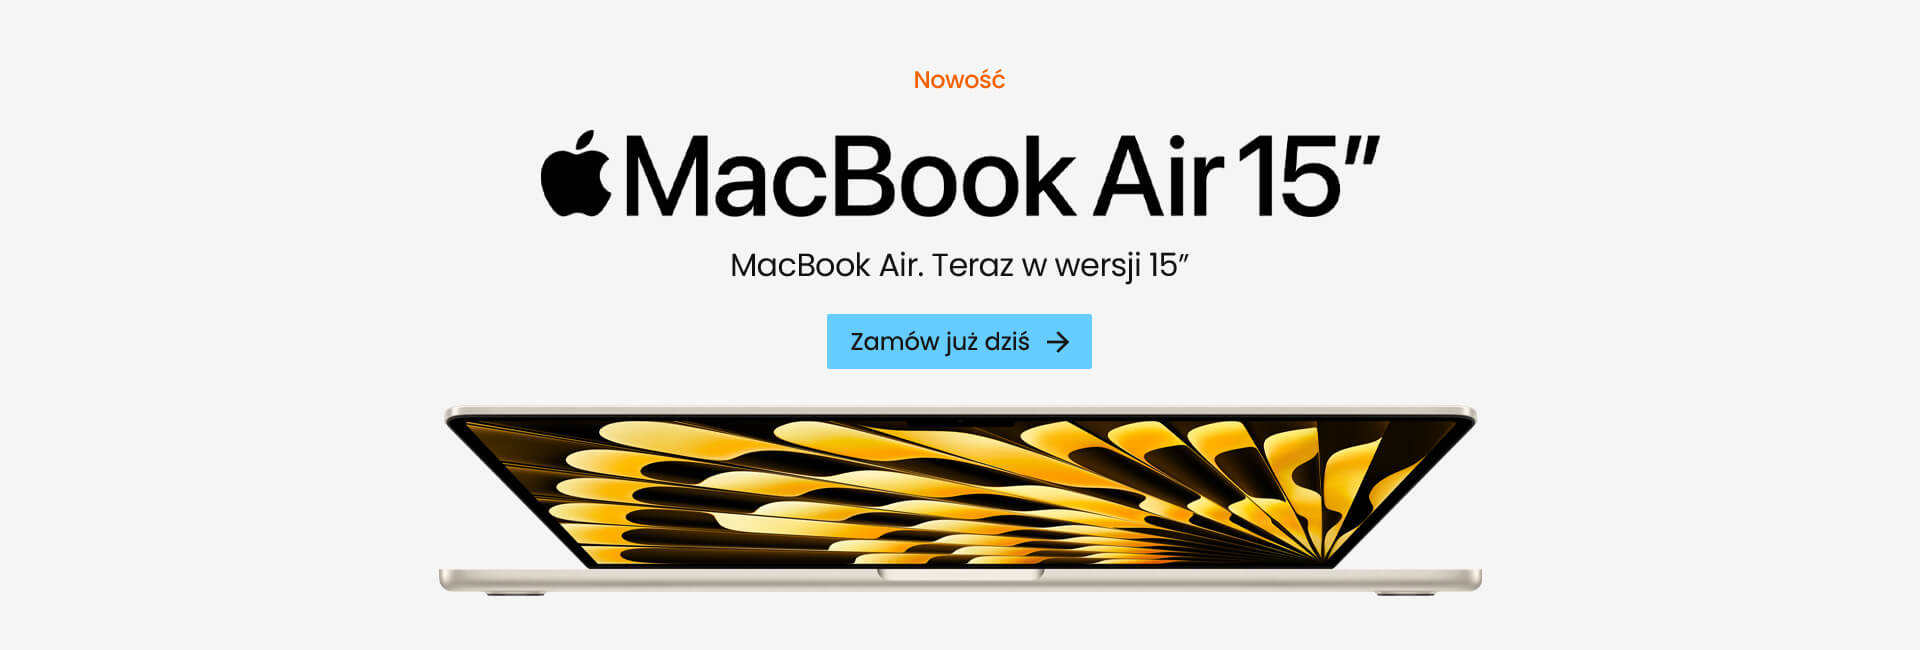 MacBook Air 15-calowy już dostępny w sprzedaży!